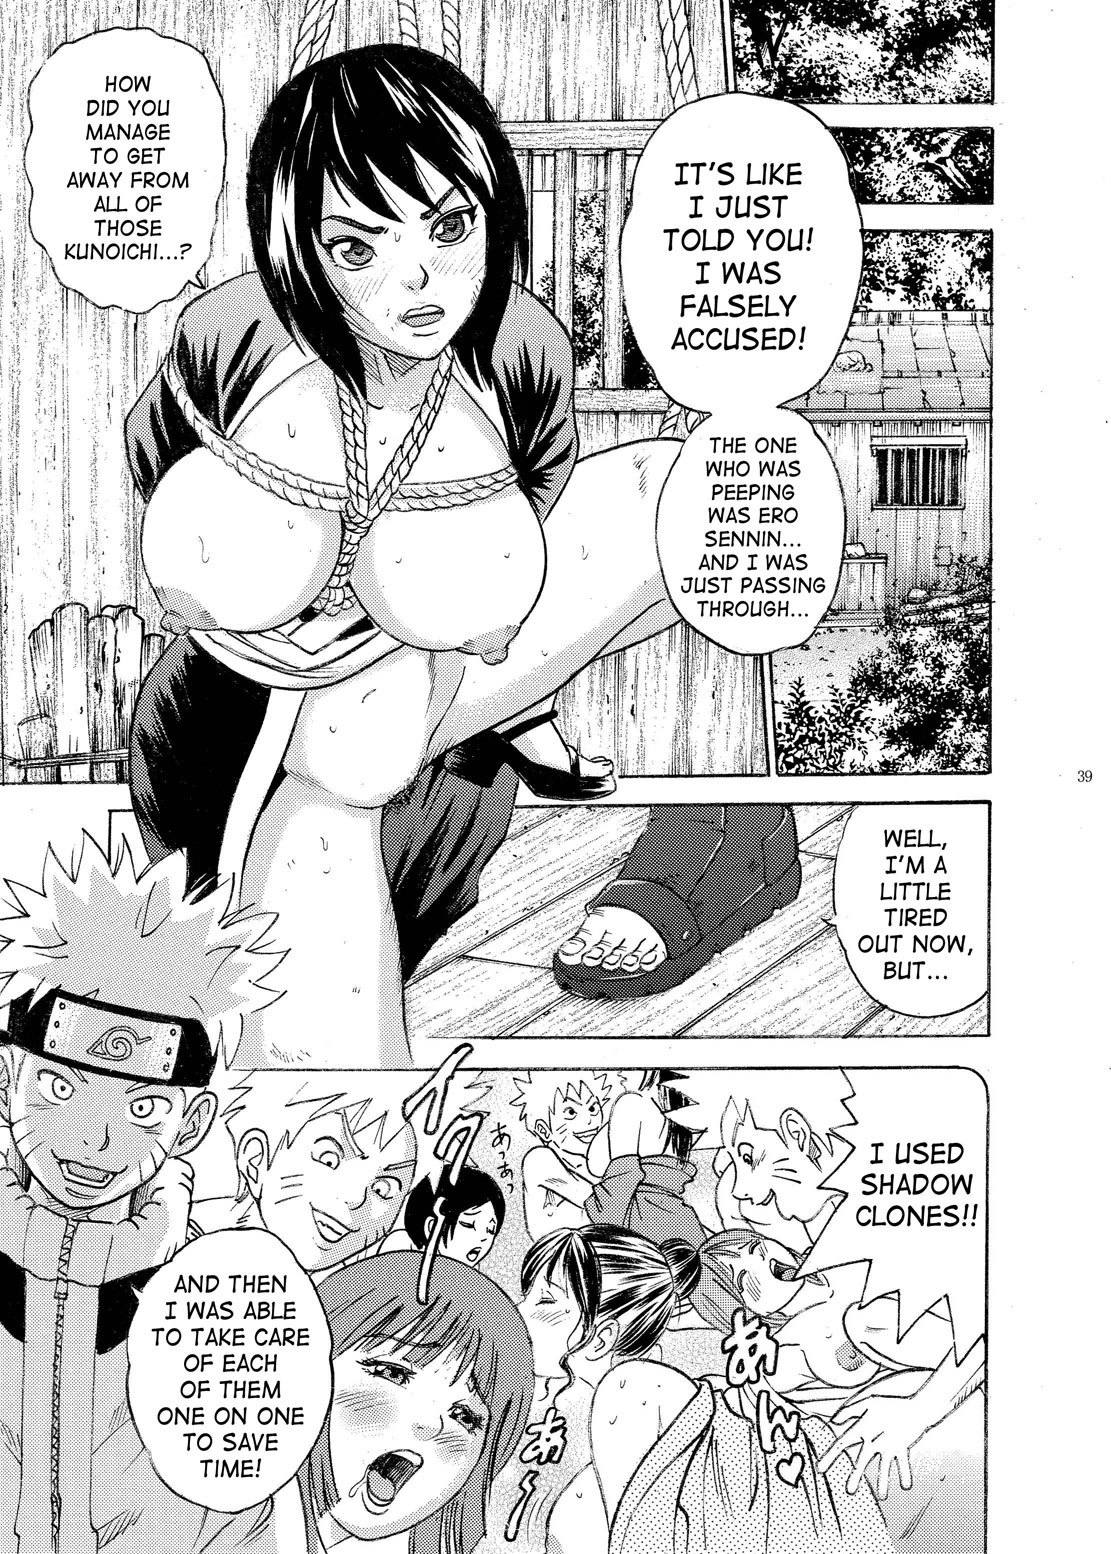 PM 9 - Indecent Ninja Exam naruto 35 hentai manga